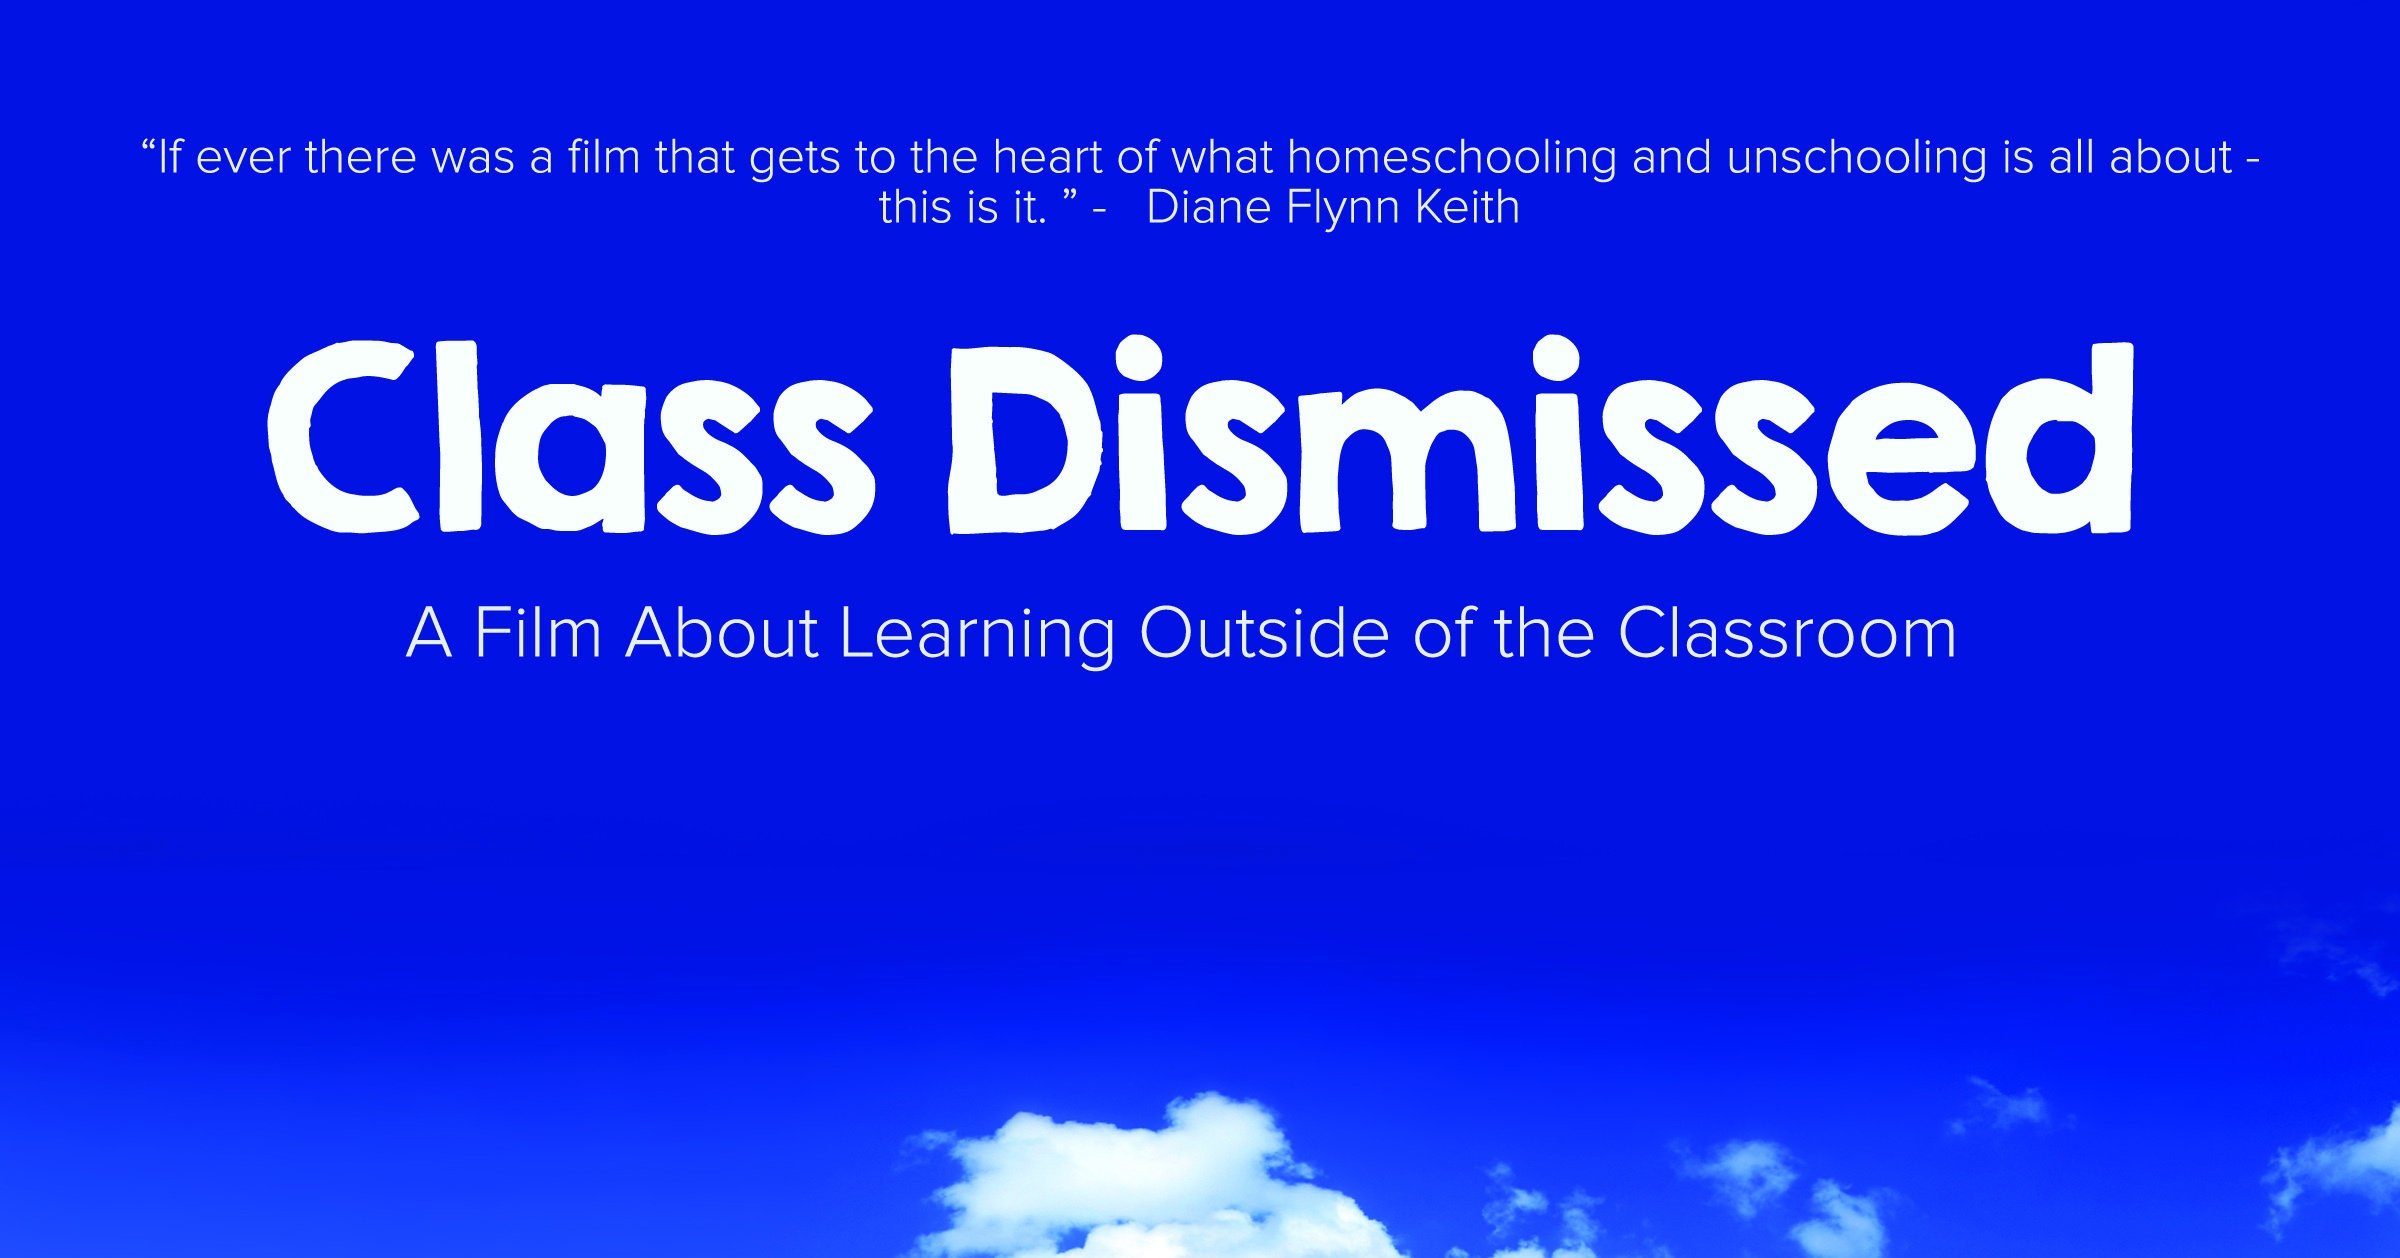 Dismissed  DISMISSED definition 